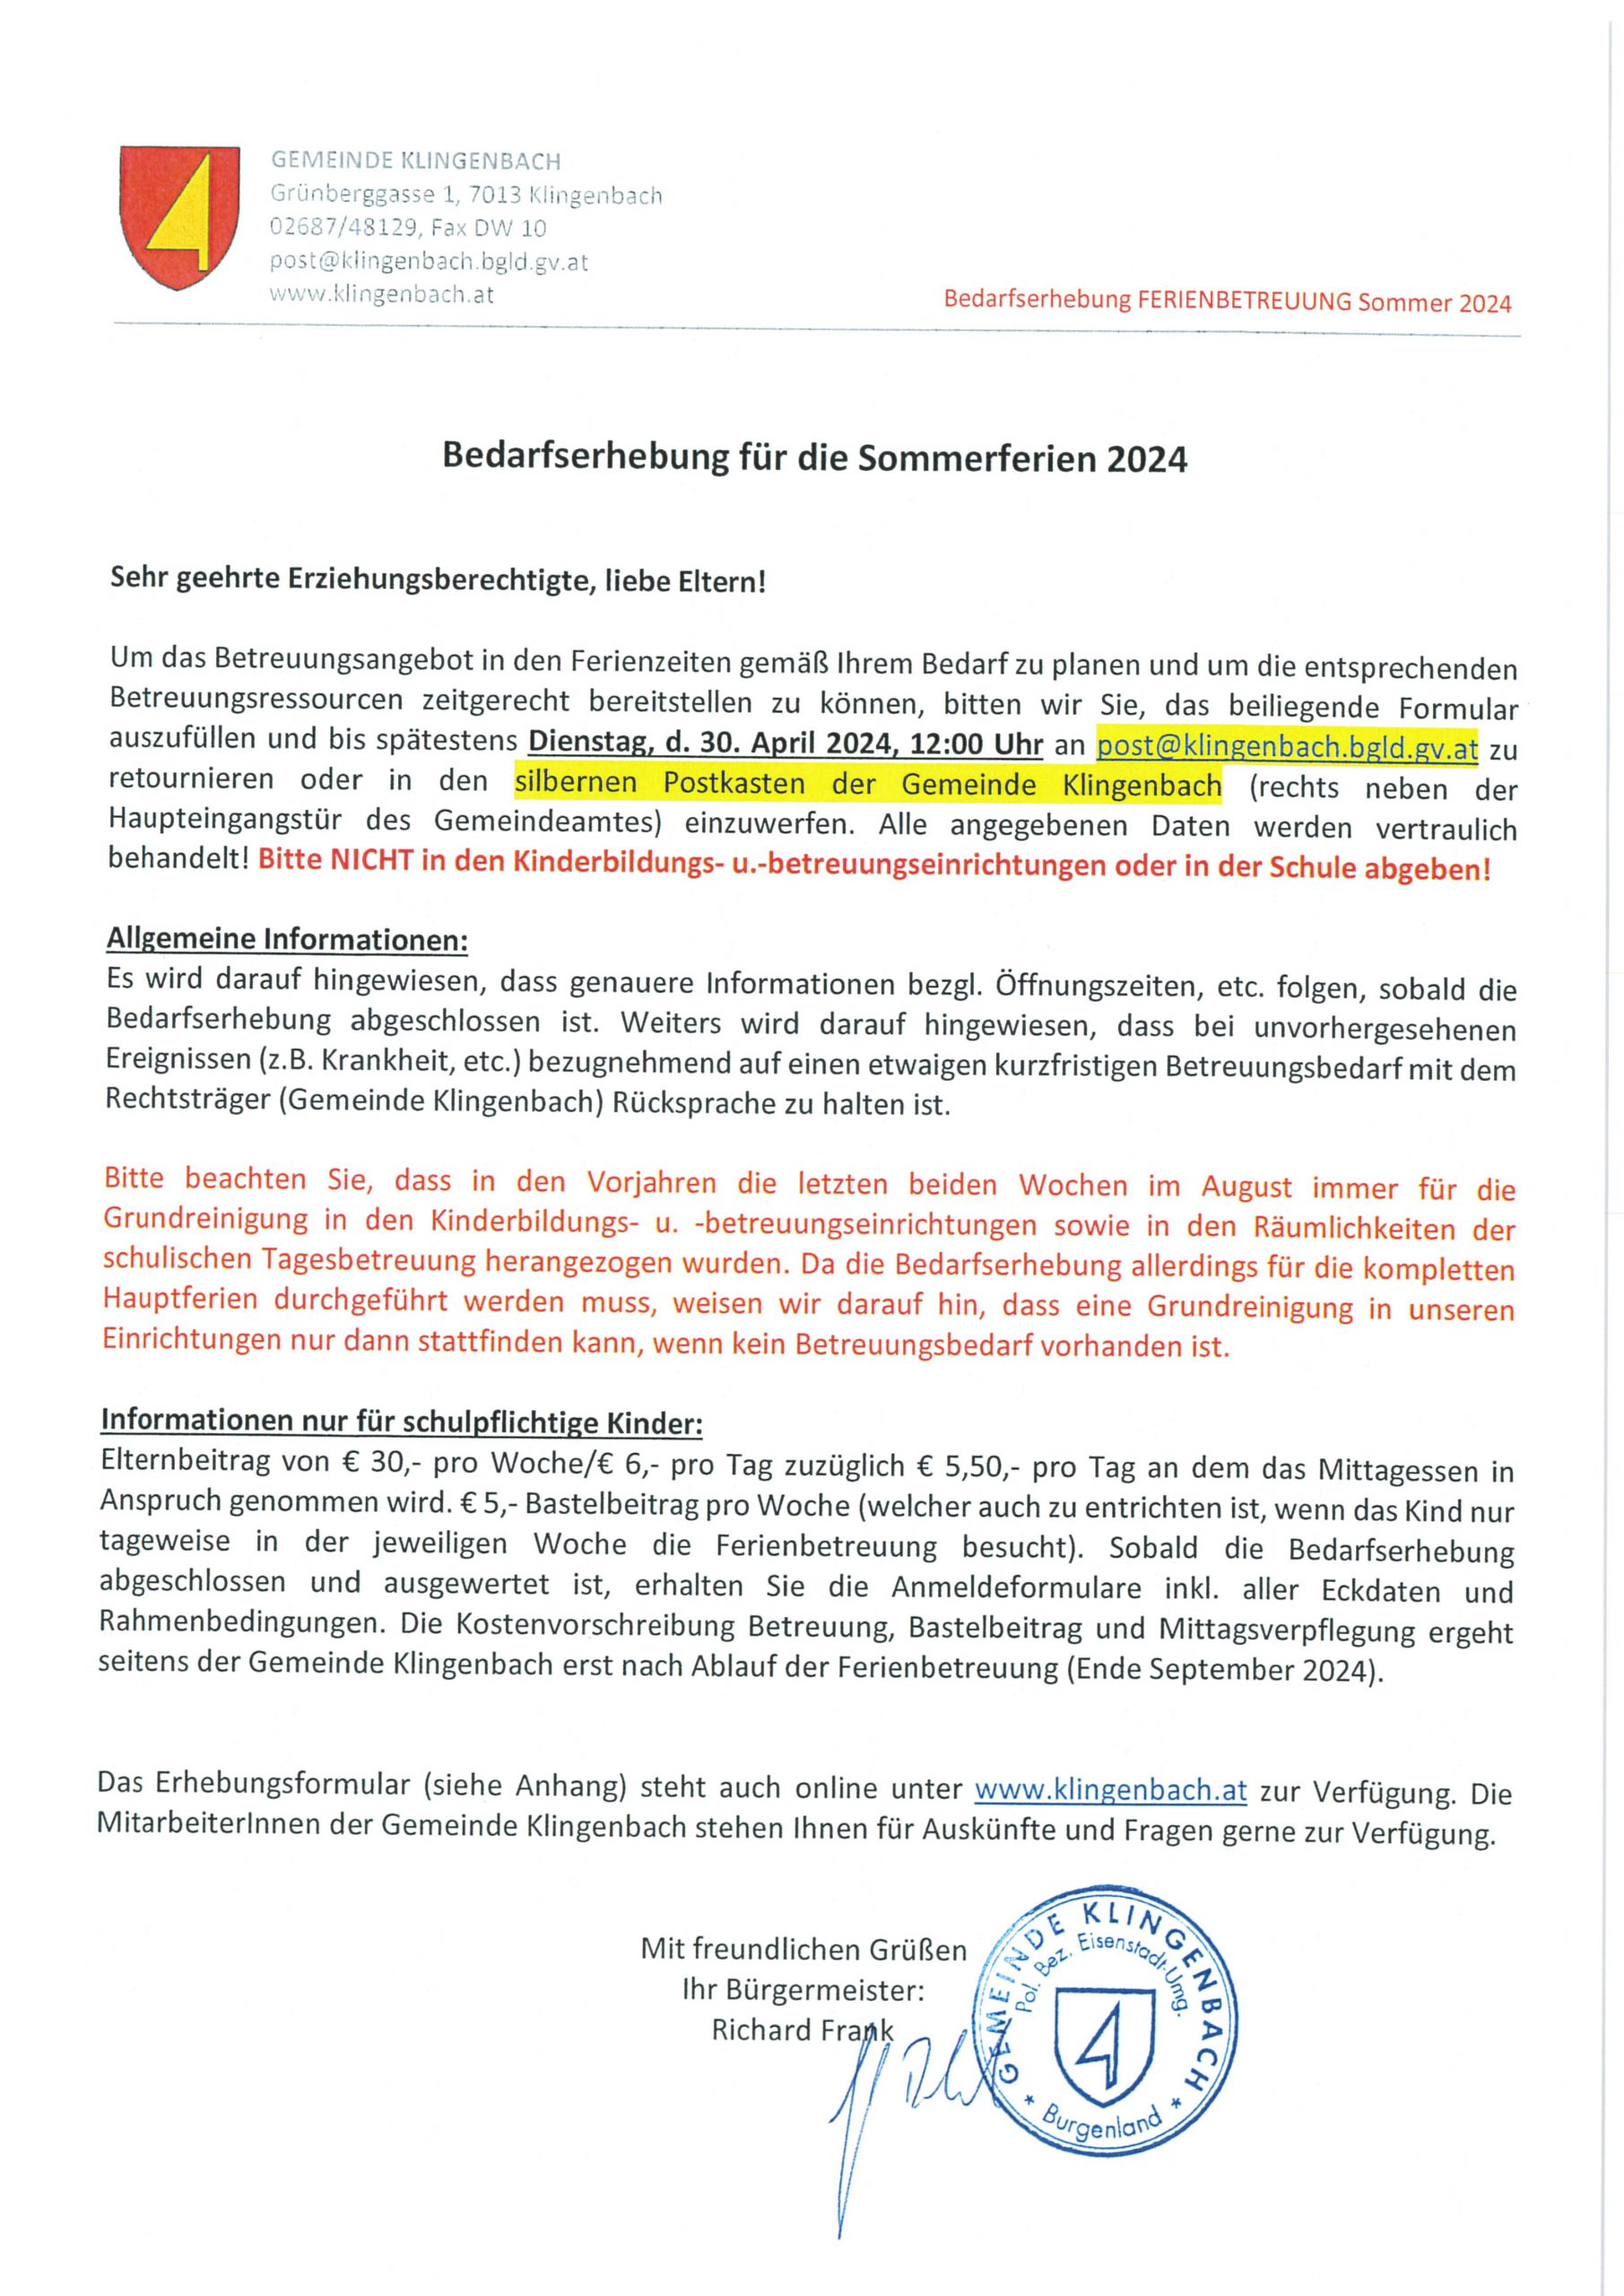 Gemeinde Klingenbach - Informationsblatt Bedarfserhebung Sommerferien 2024